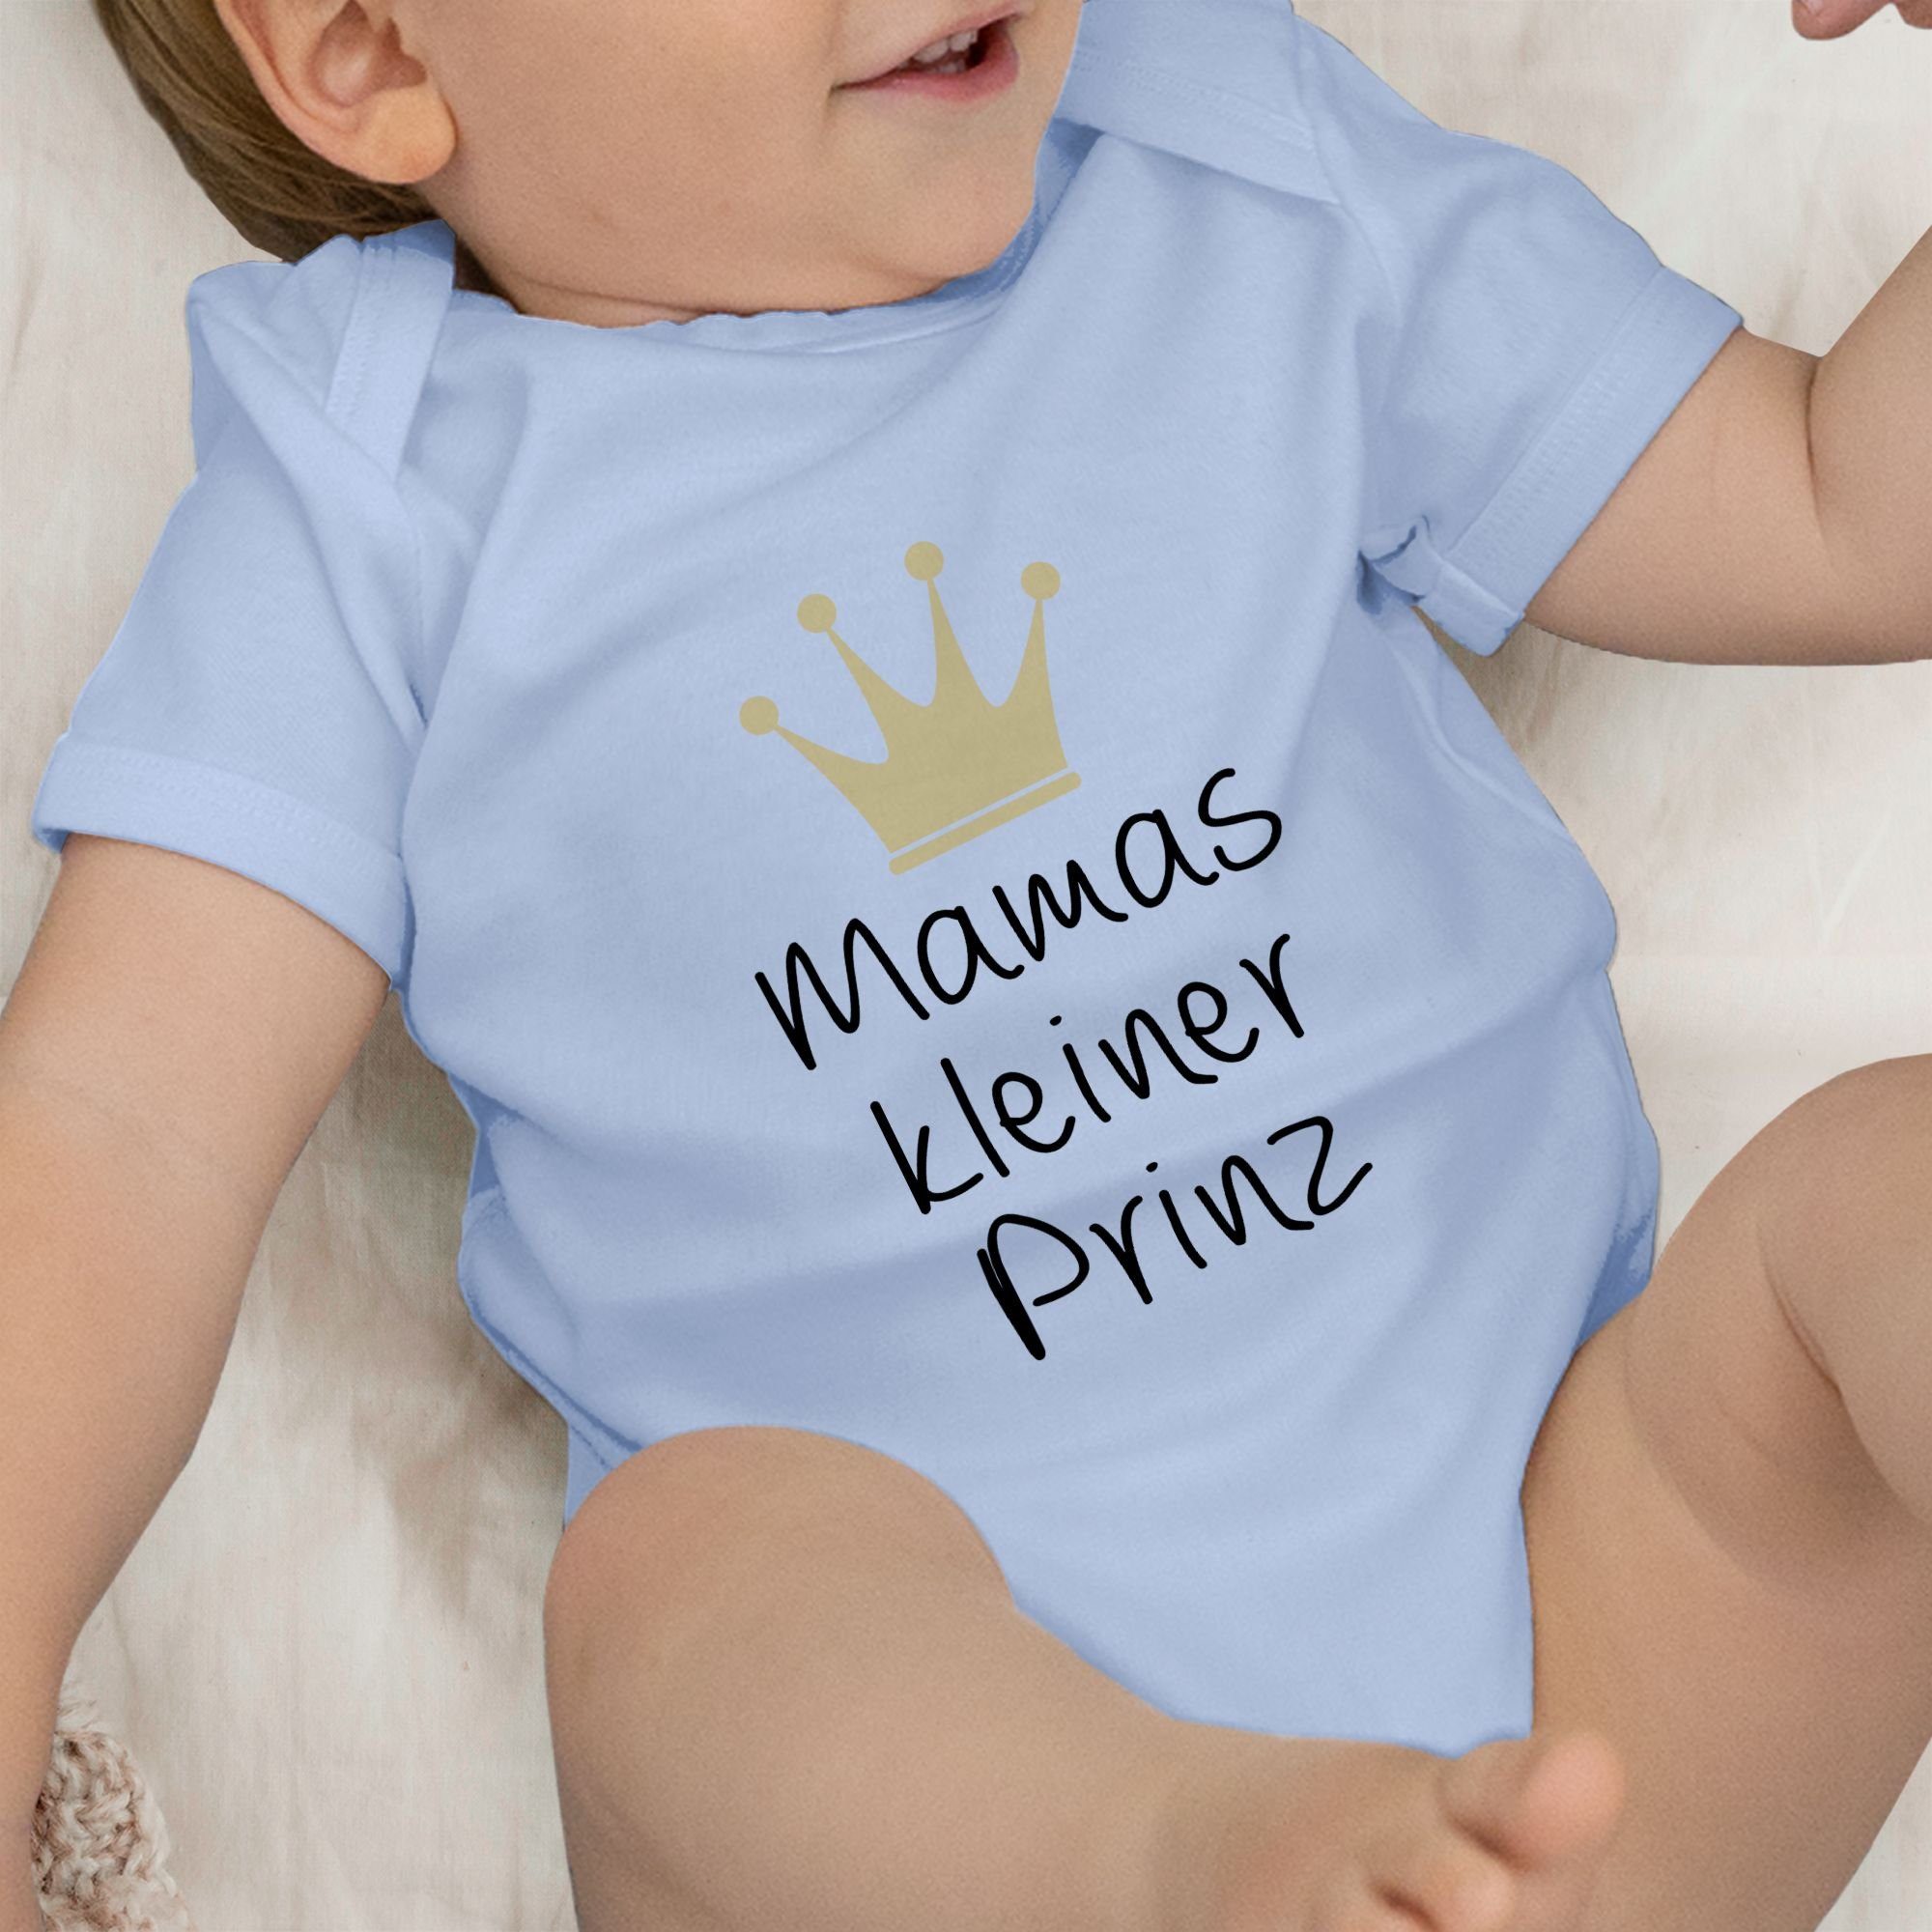 Shirtracer Shirtbody Mamas kleiner (1-tlg) Muttertagsgeschenk Babyblau 1 Prinz